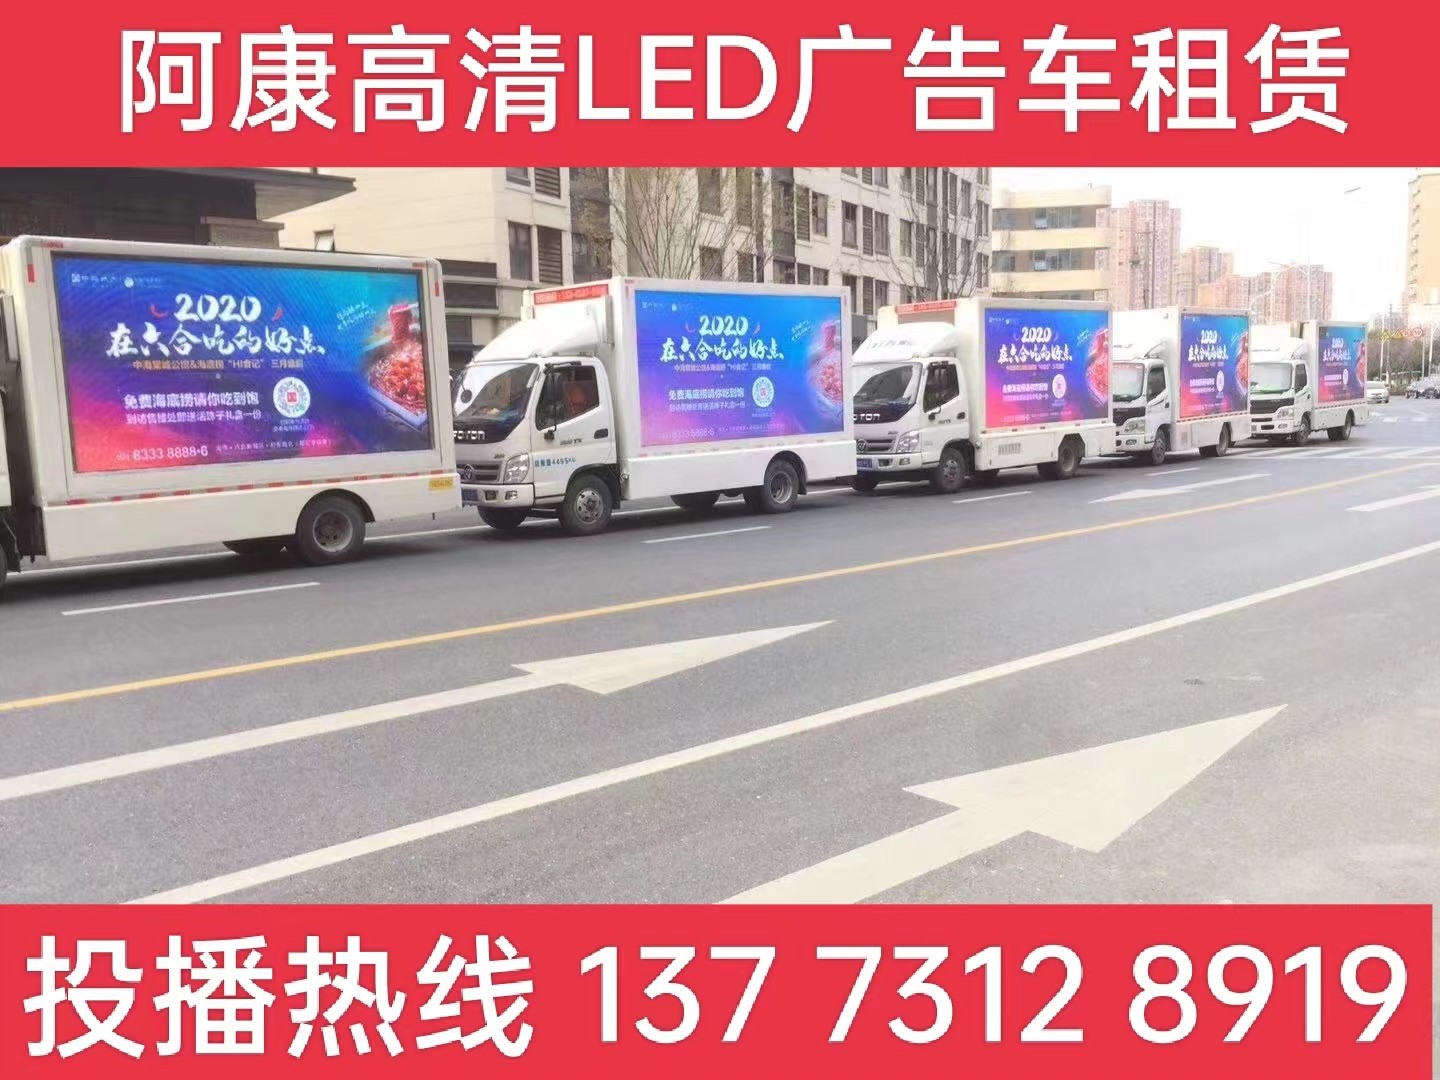 浦口区宣传车出租-海底捞LED广告